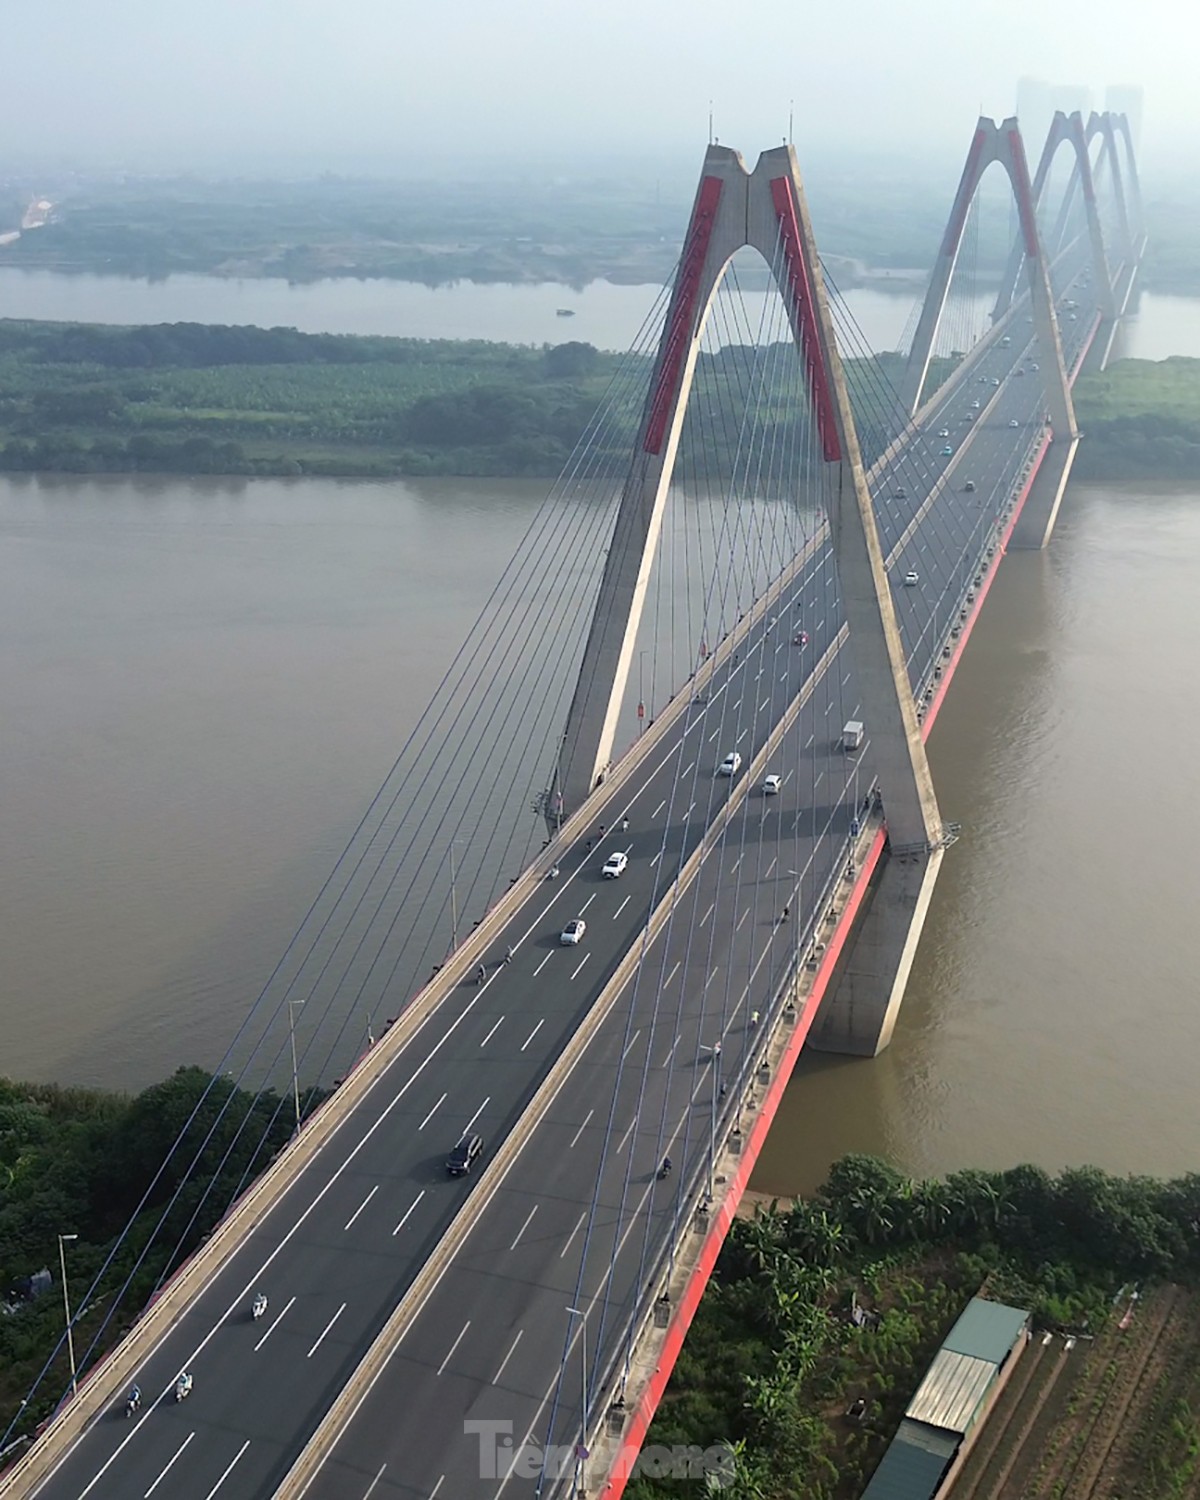 Khám phá Cầu Nhật Tân - Cây cầu thép dây văng lớn nhất Việt Nam - Ảnh 6.